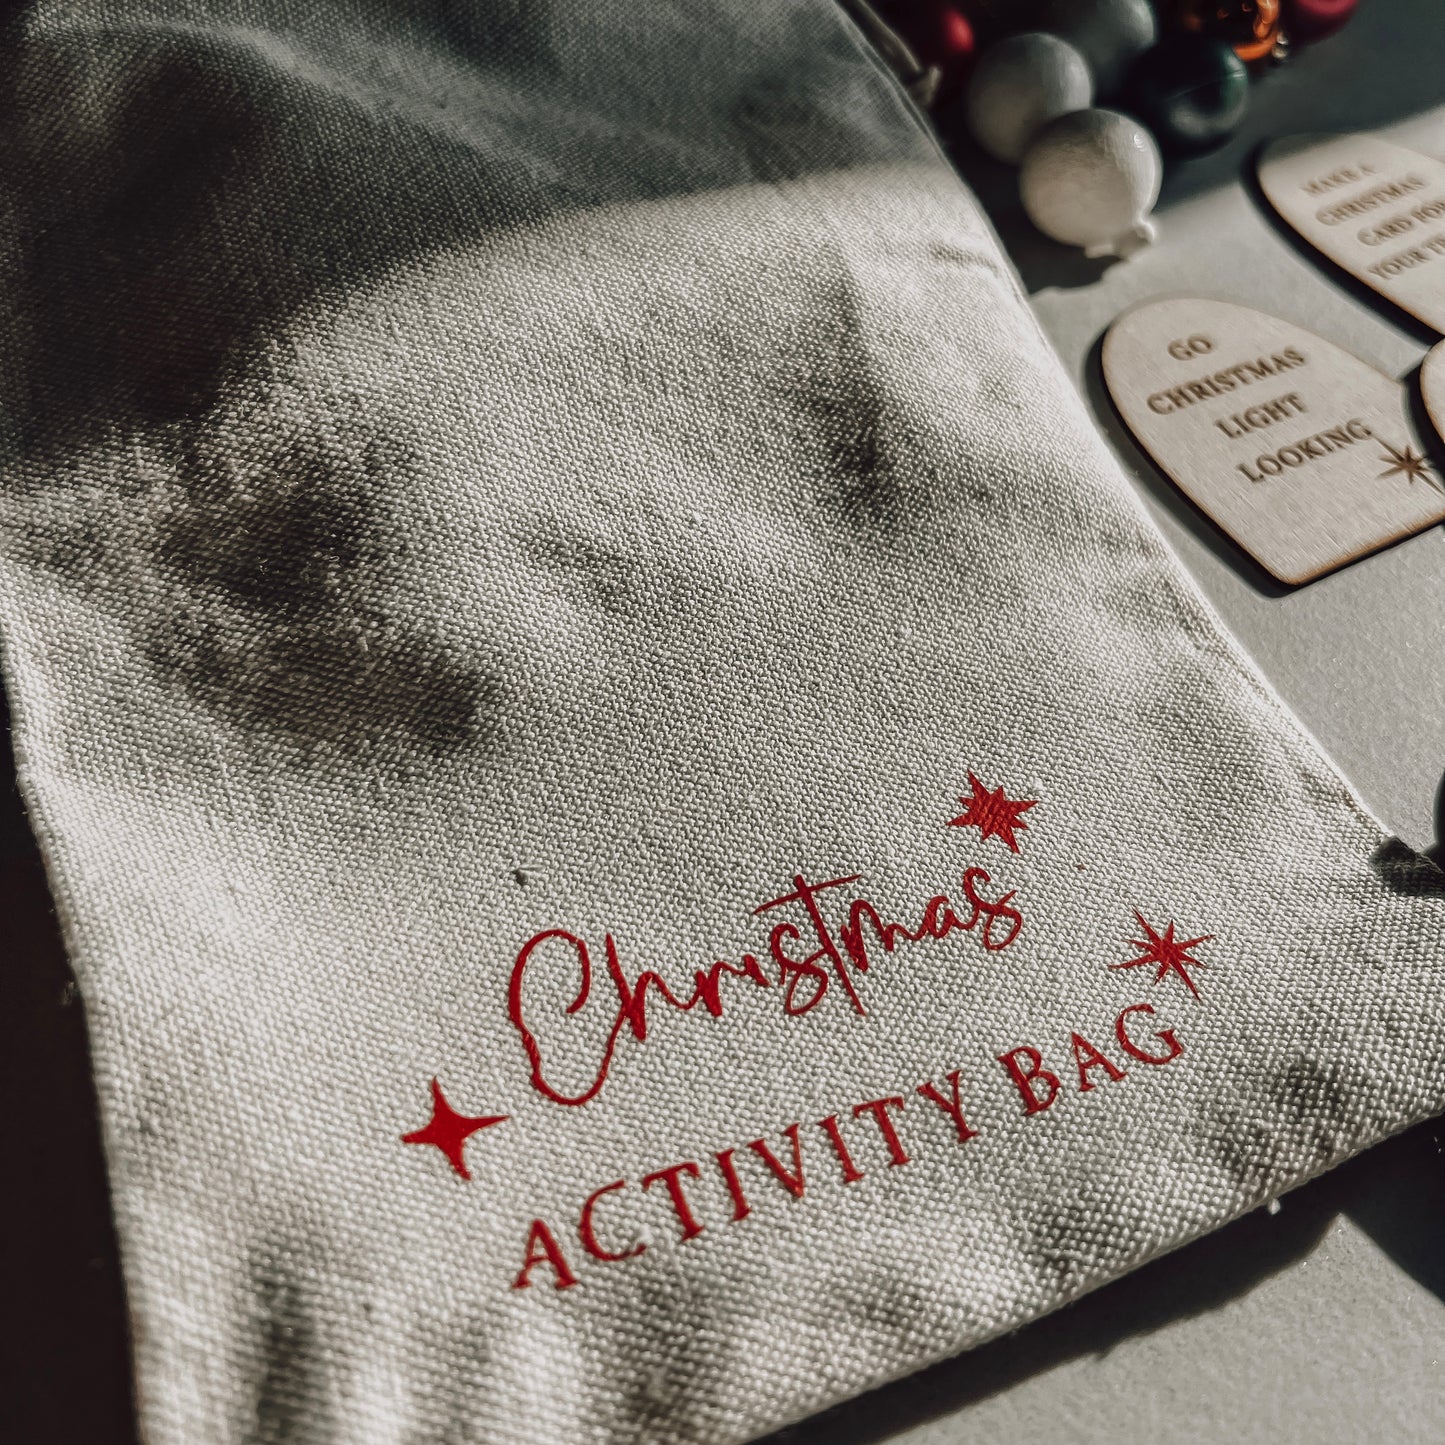 The Mindful Christmas Advent Bag